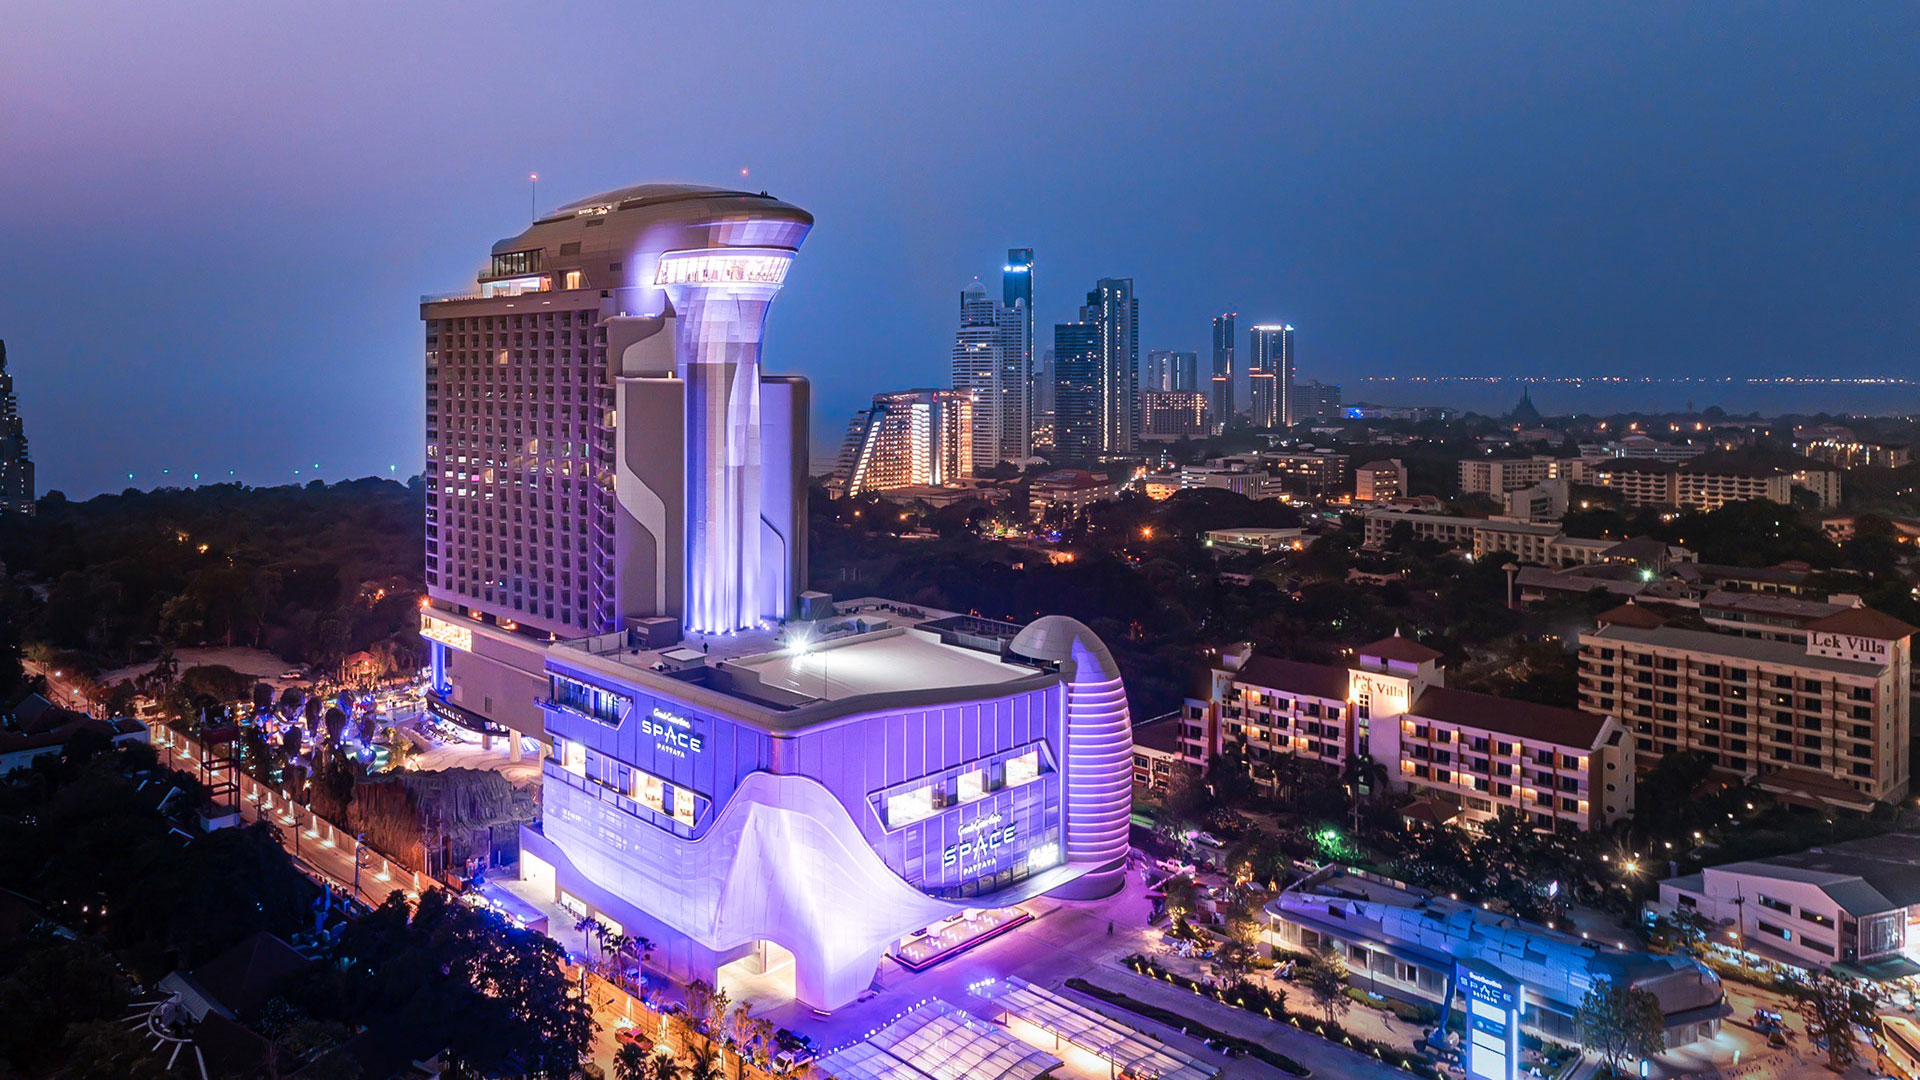 Hôtels du monde : un hôtel sur le thème de l’espace, Thaïlande